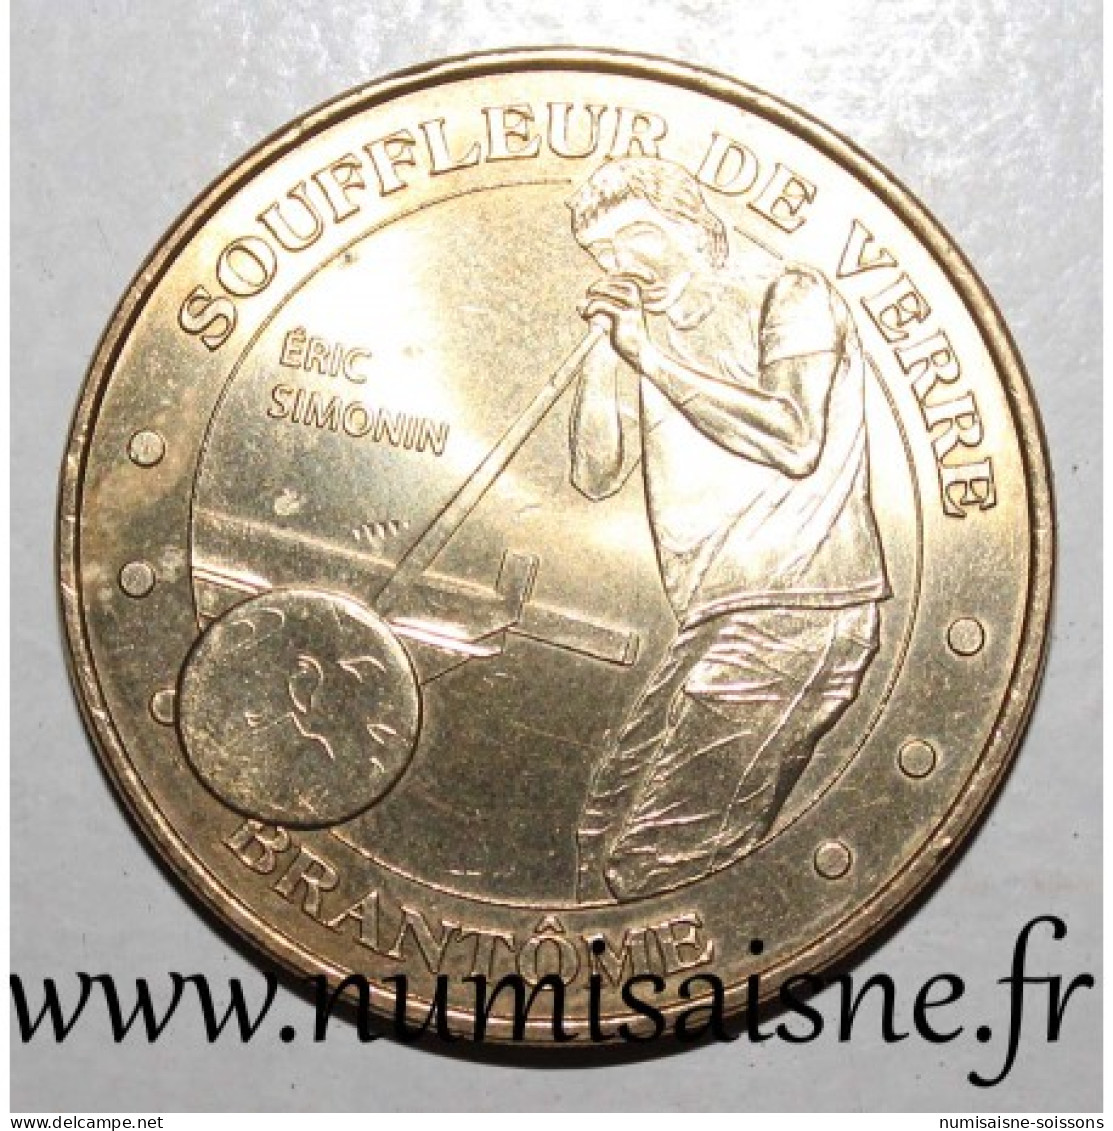 24 - BRANTÔME - SOUFFLEUR DE VERRE - Monnaie De Paris - 2010 - 2010